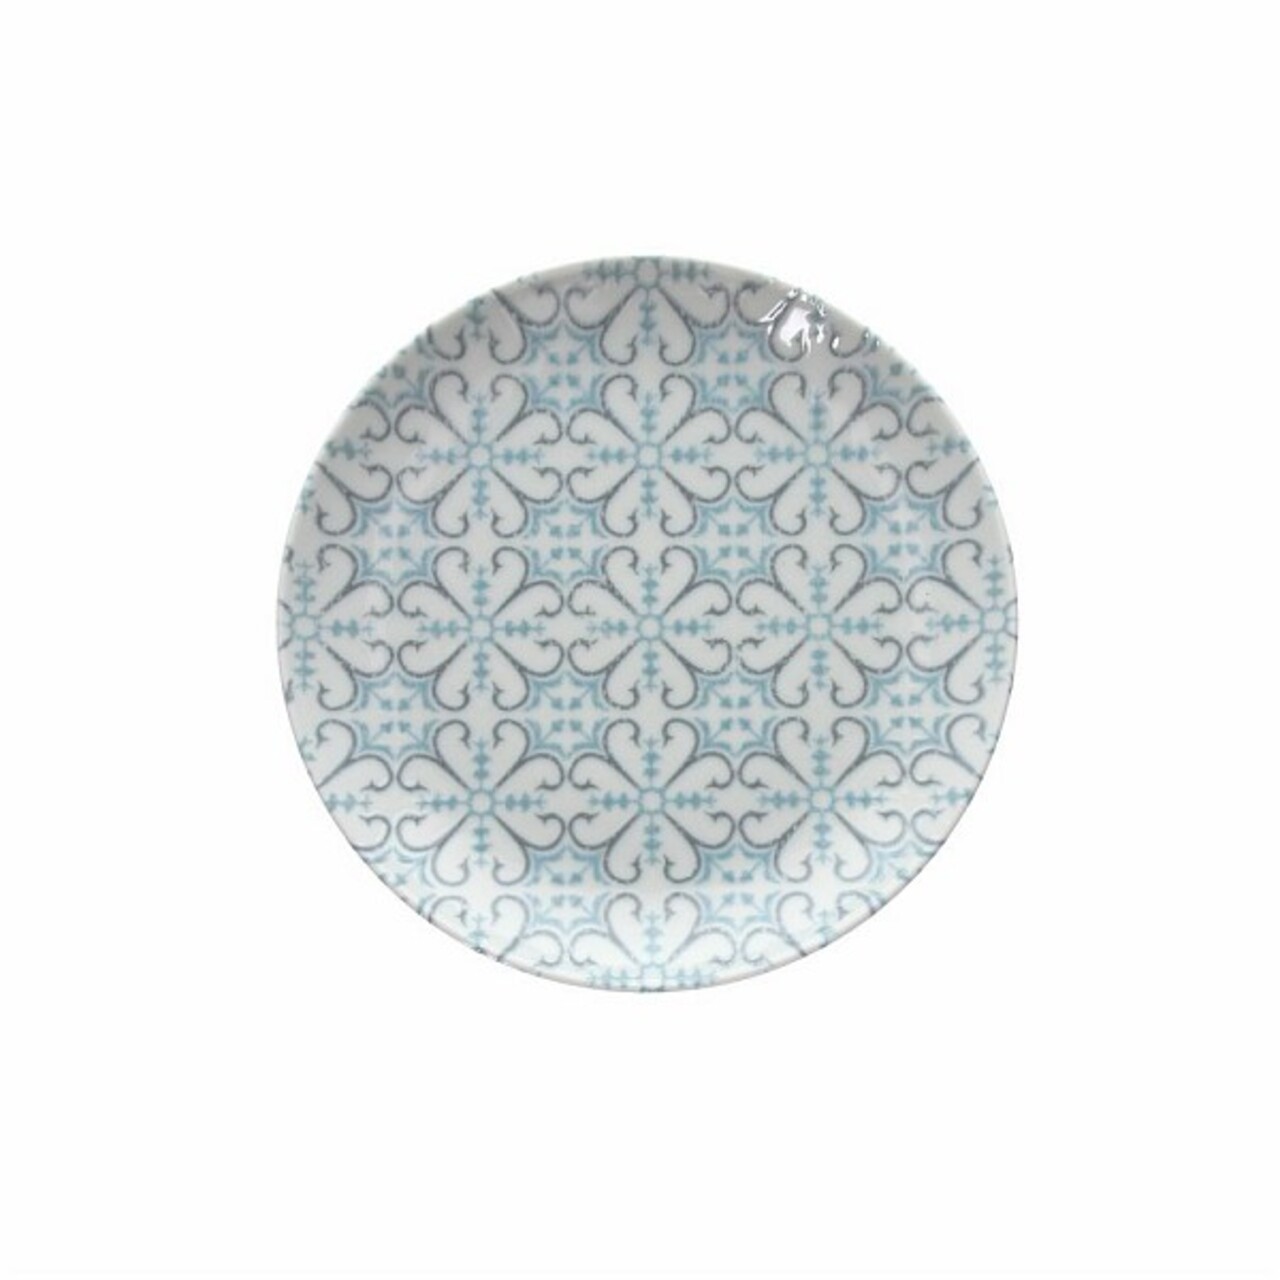 Tognana Desszertes tányér, Aura Blu, 20 cm Ø, porcelán, fehér/kék